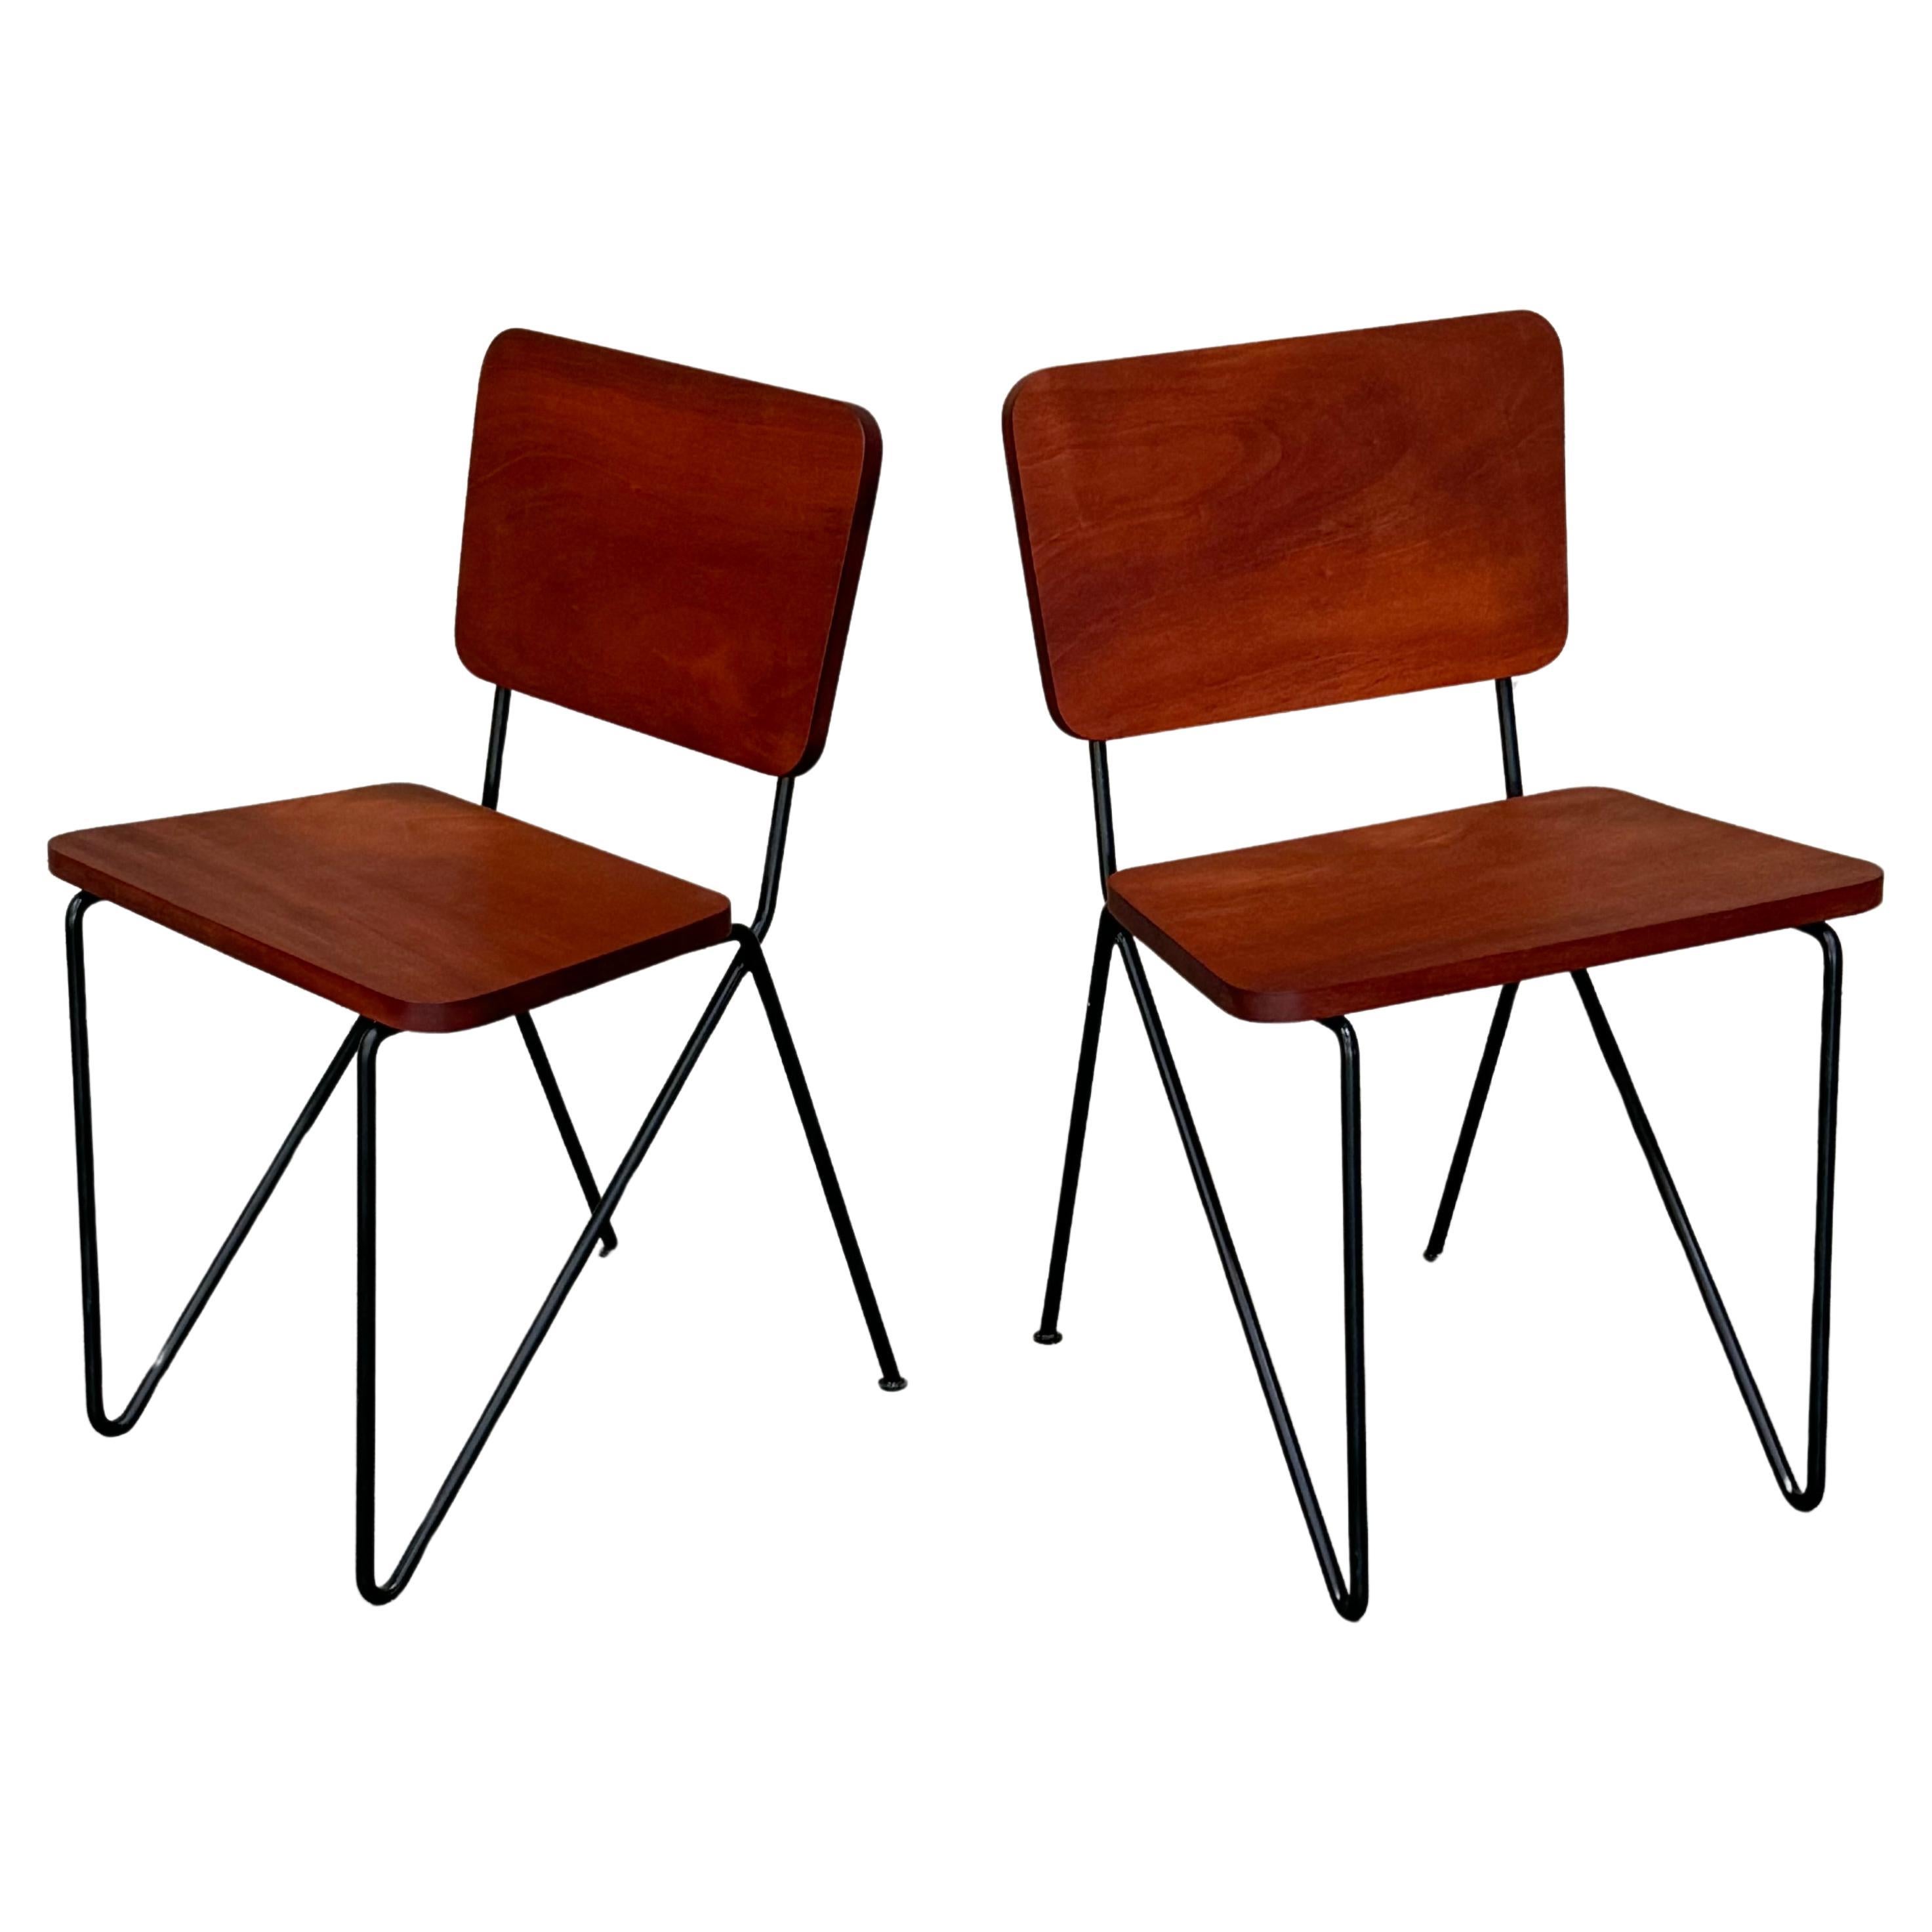 Ein Paar Beistellstühle aus Eisen und tropischem Hartholz im kalifornischen Design der 1950er Jahre